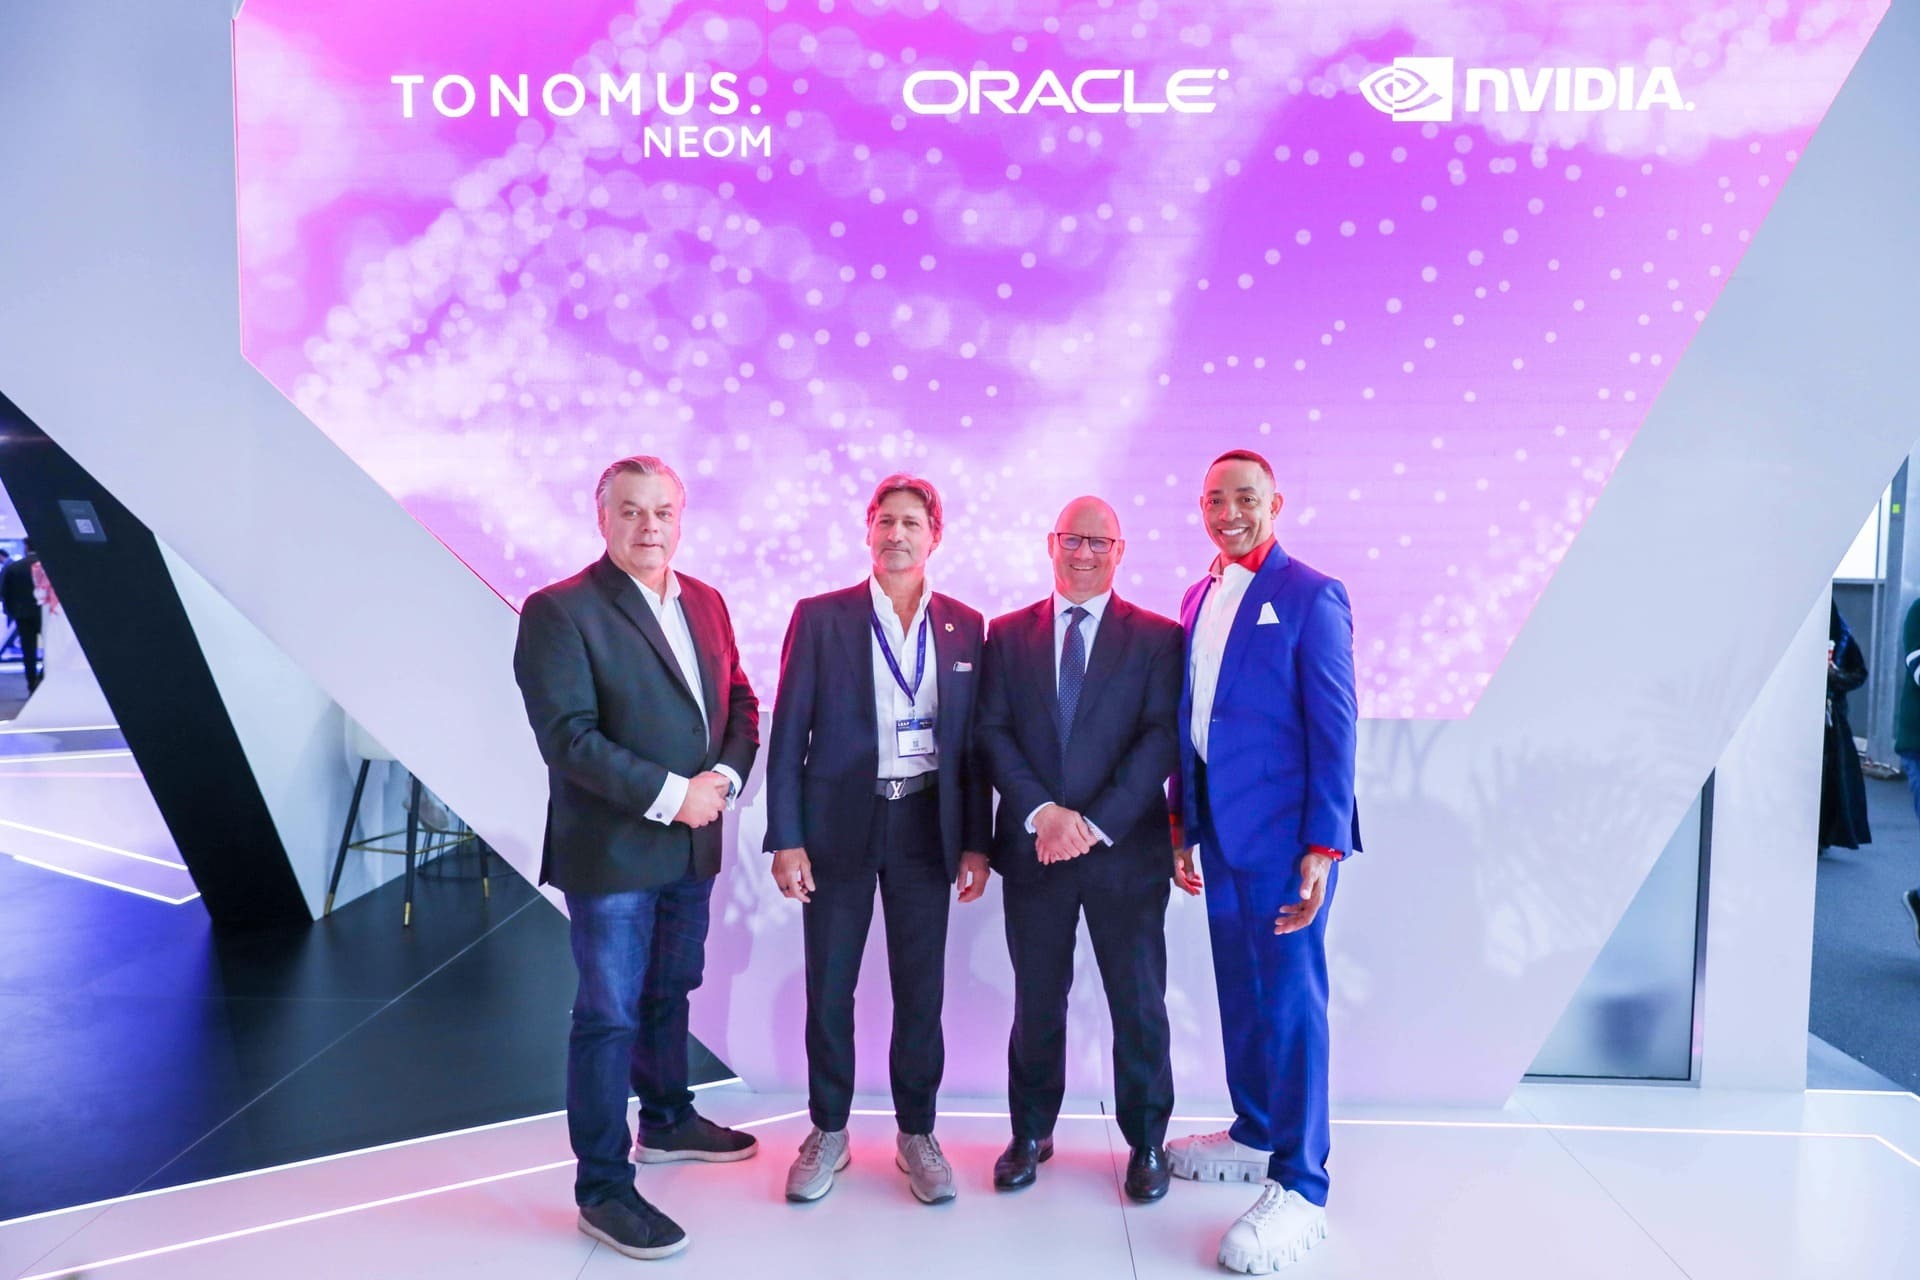 TONOMUS arbeitet mit Oracle und NVIDIA zusammen, um den Einsatz von KI in NEOM und Saudi-Arabien zu fördern und Innovationen zu unterstützen